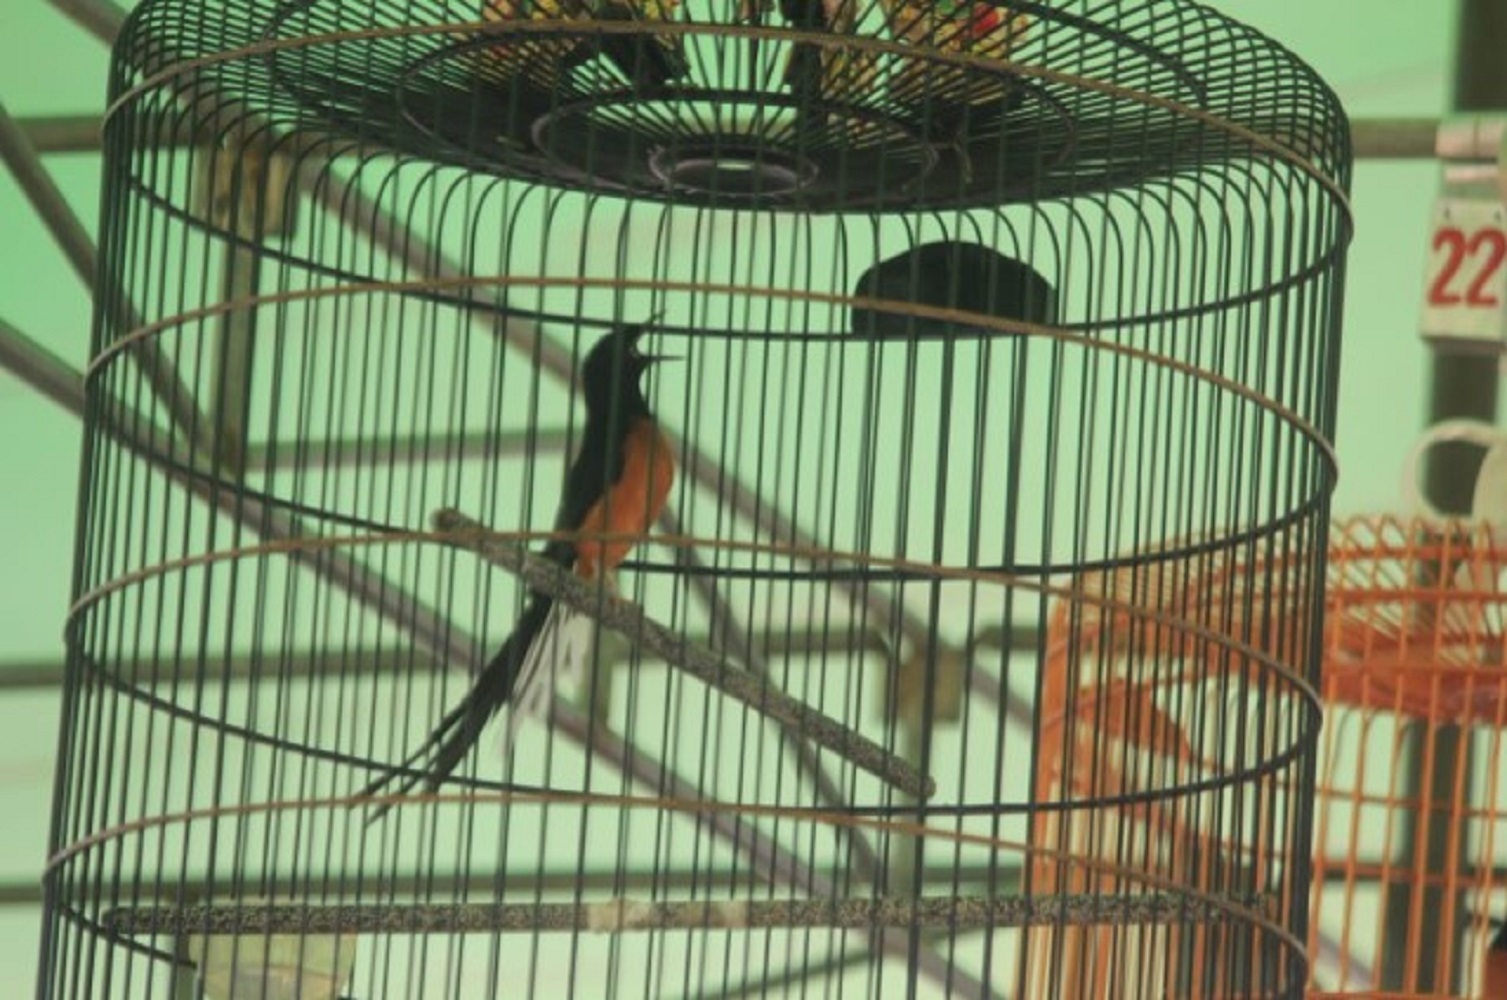 Manfaat Kroto Pada Burung Kicau dan Saat Mabung, Kadar Protein Terpenuhi